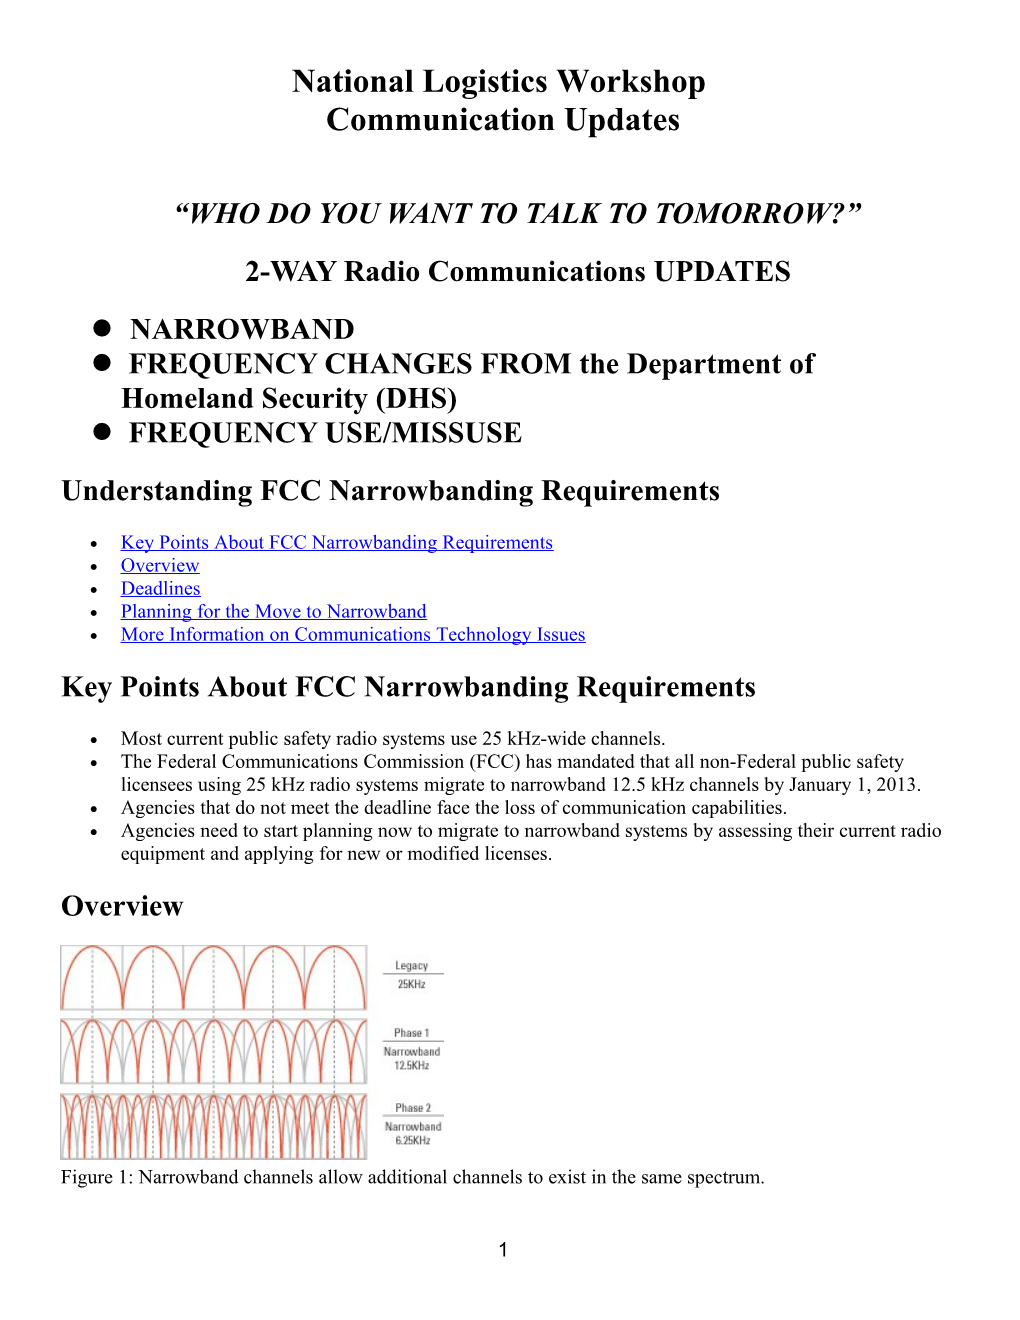 Understanding FCC Narrowbanding Requirements